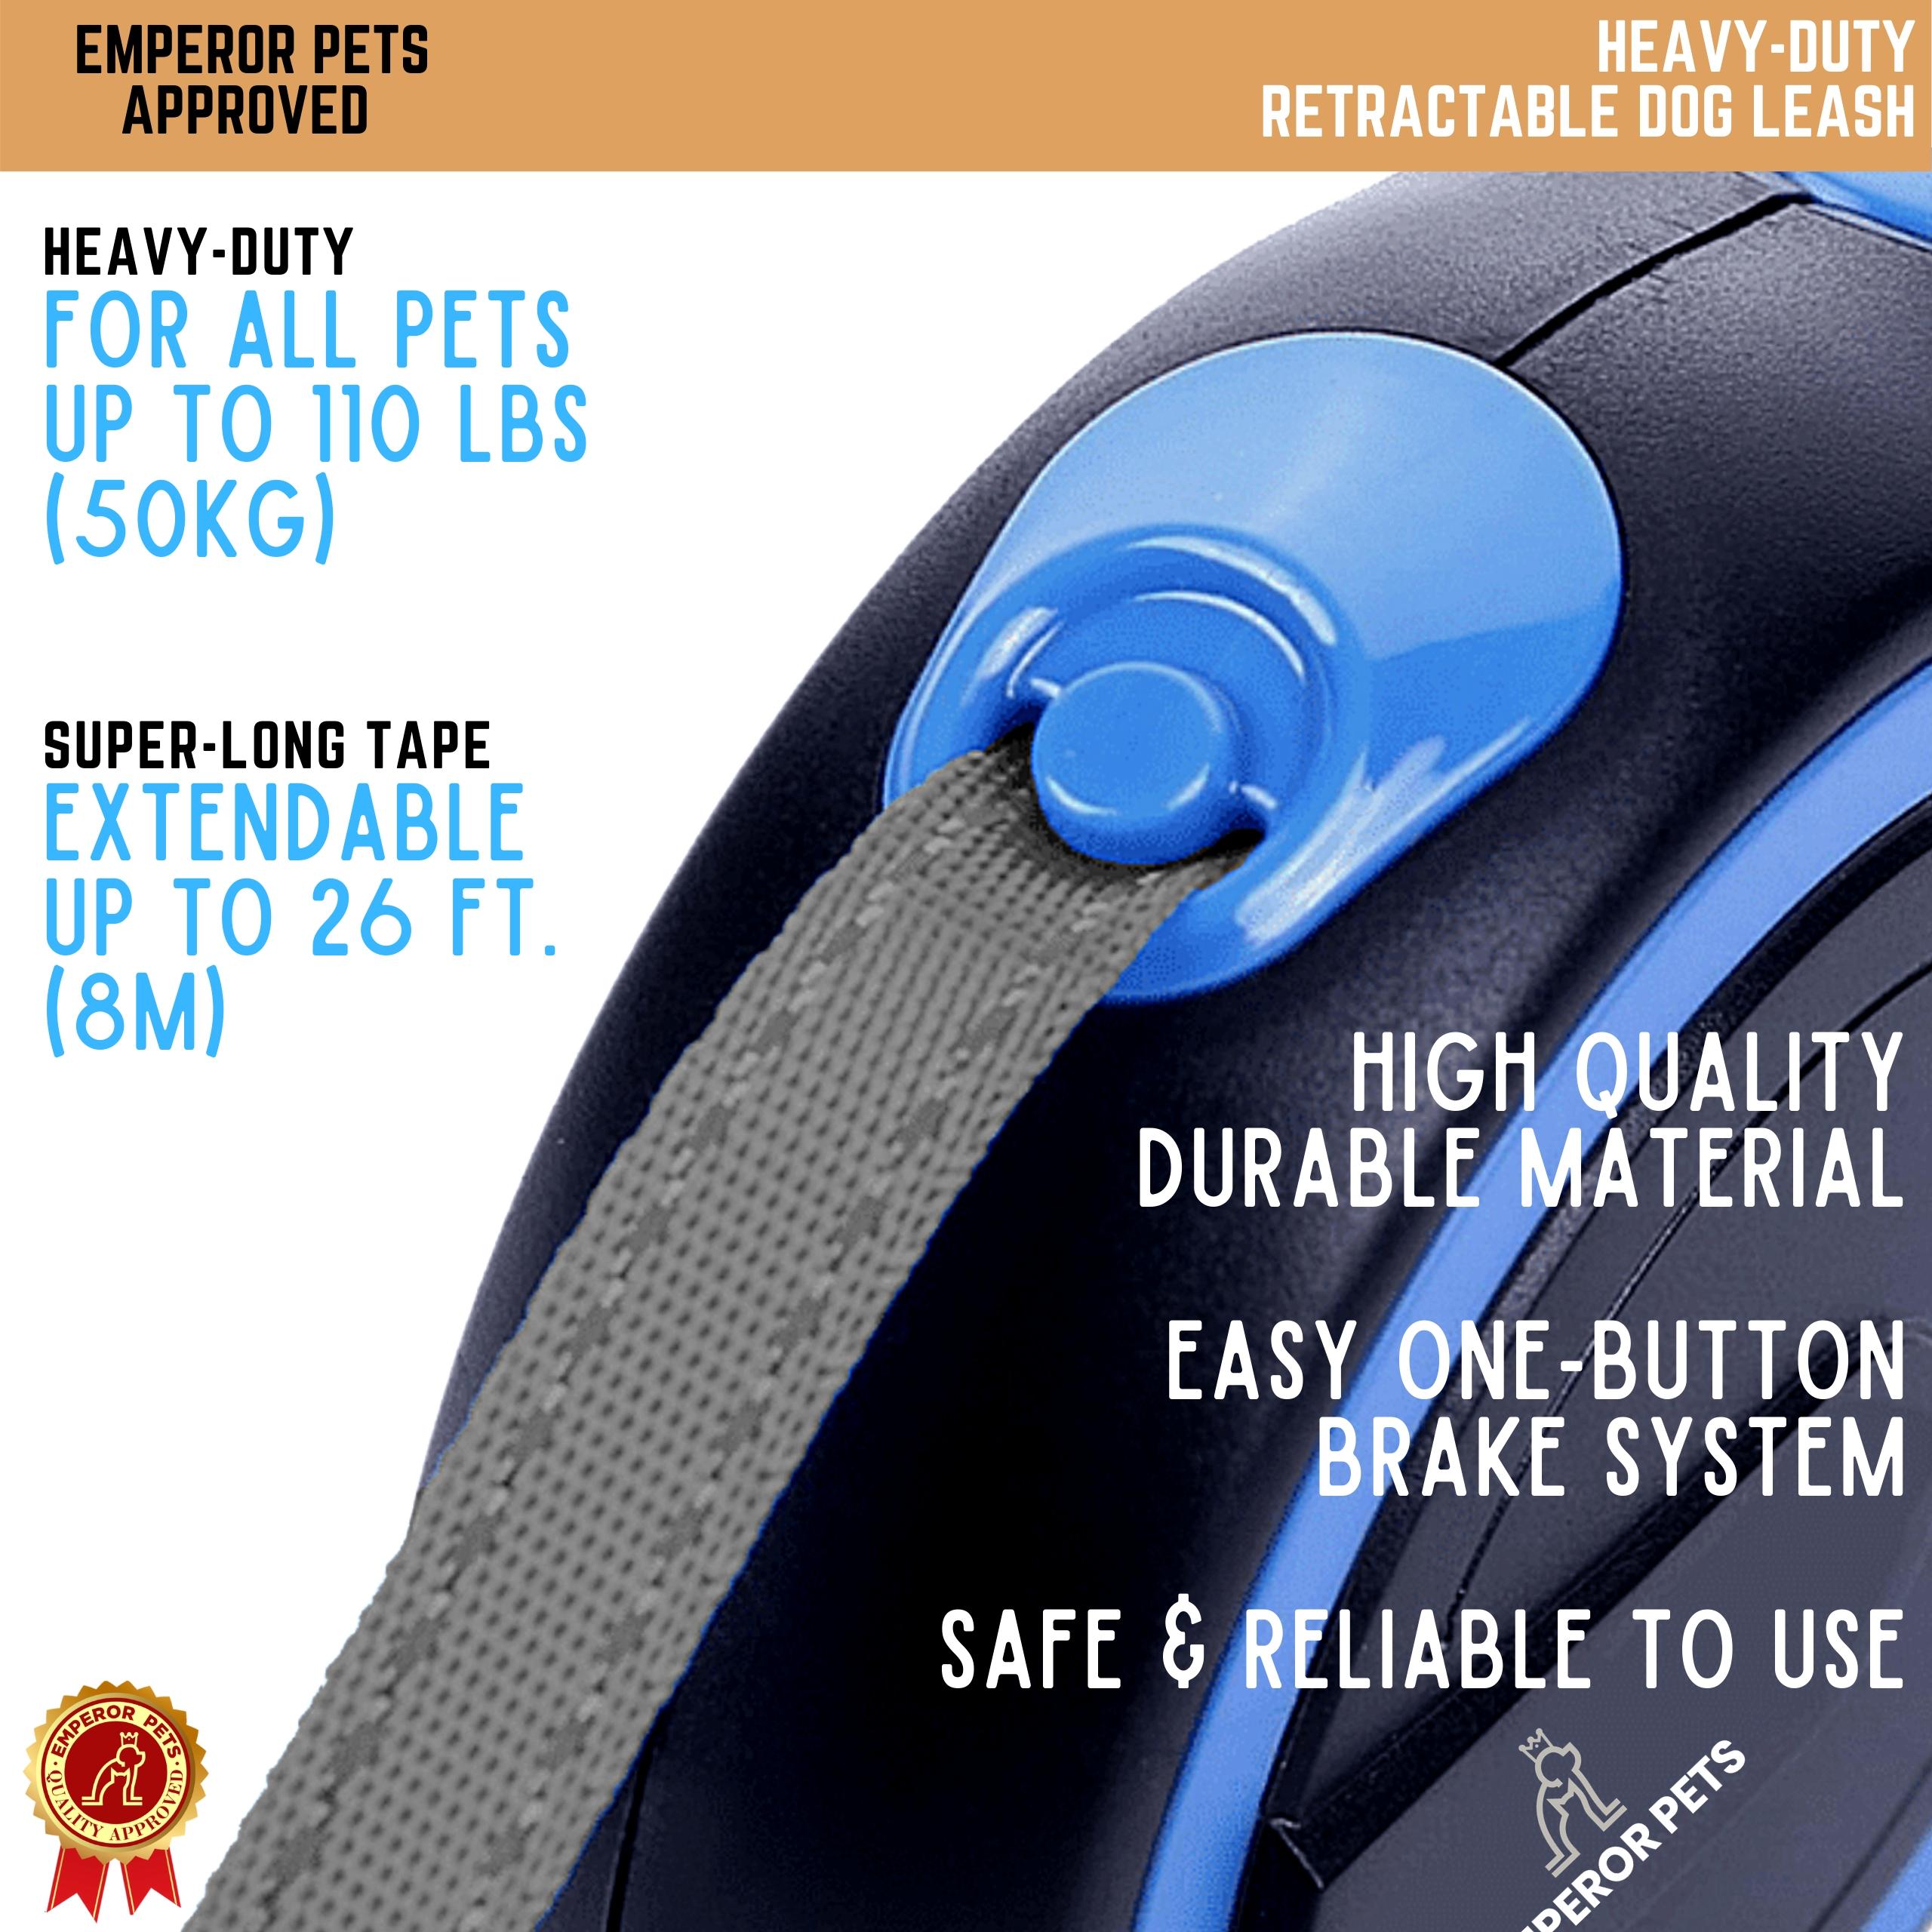 Emperor Pets Retractable Pet Leash Tape Length 26ft 8m Blue Color, Durable Retractable Dog Leash - Image 2 Highlight